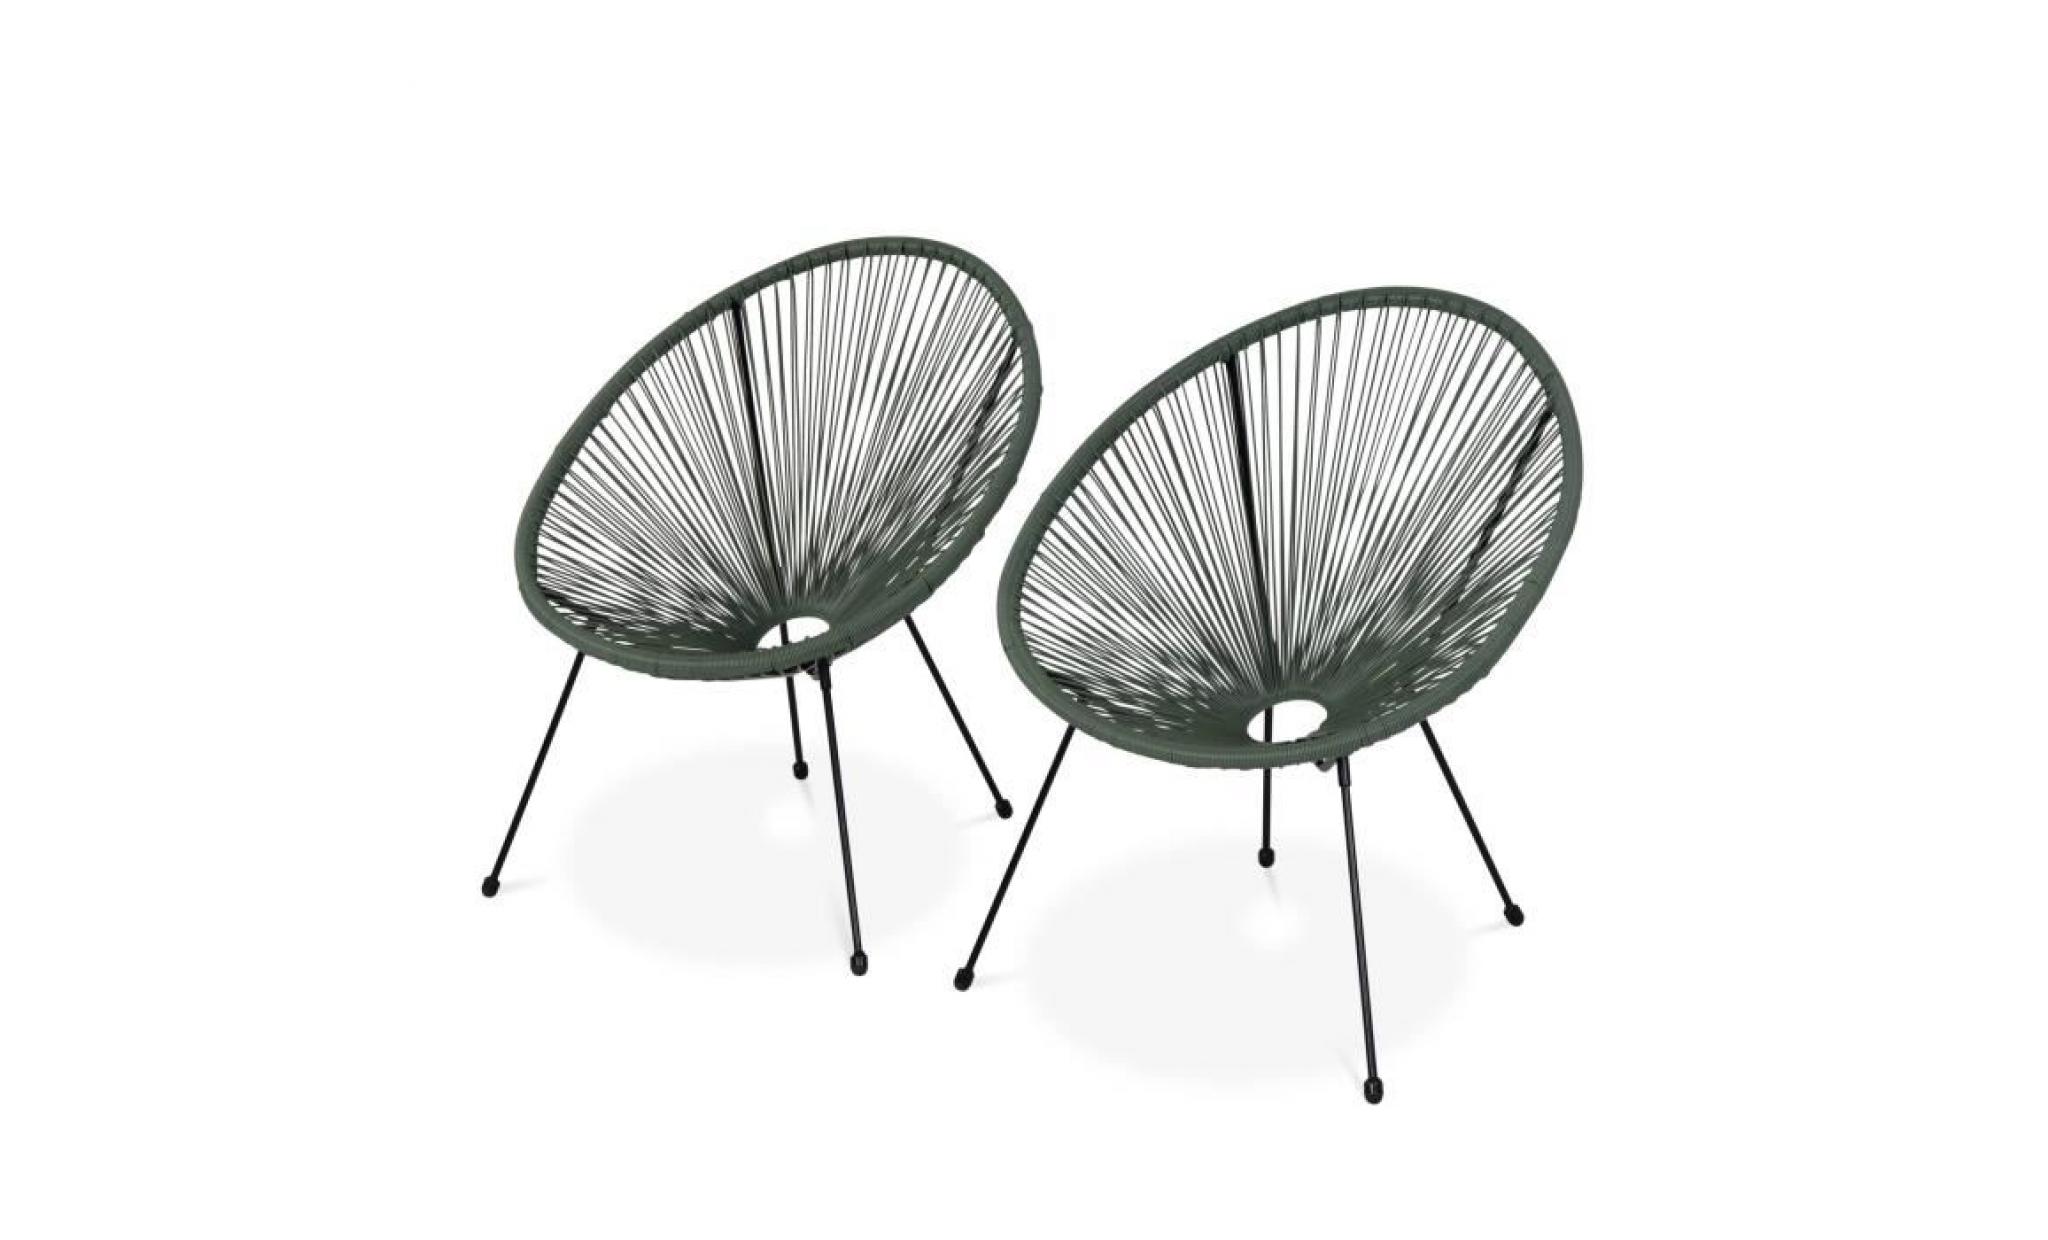 lot de 2 fauteuils design oeuf   acapulco vert de gris   fauteuils 4 pieds design rétro, cordage plastique, intérieur / extérieur